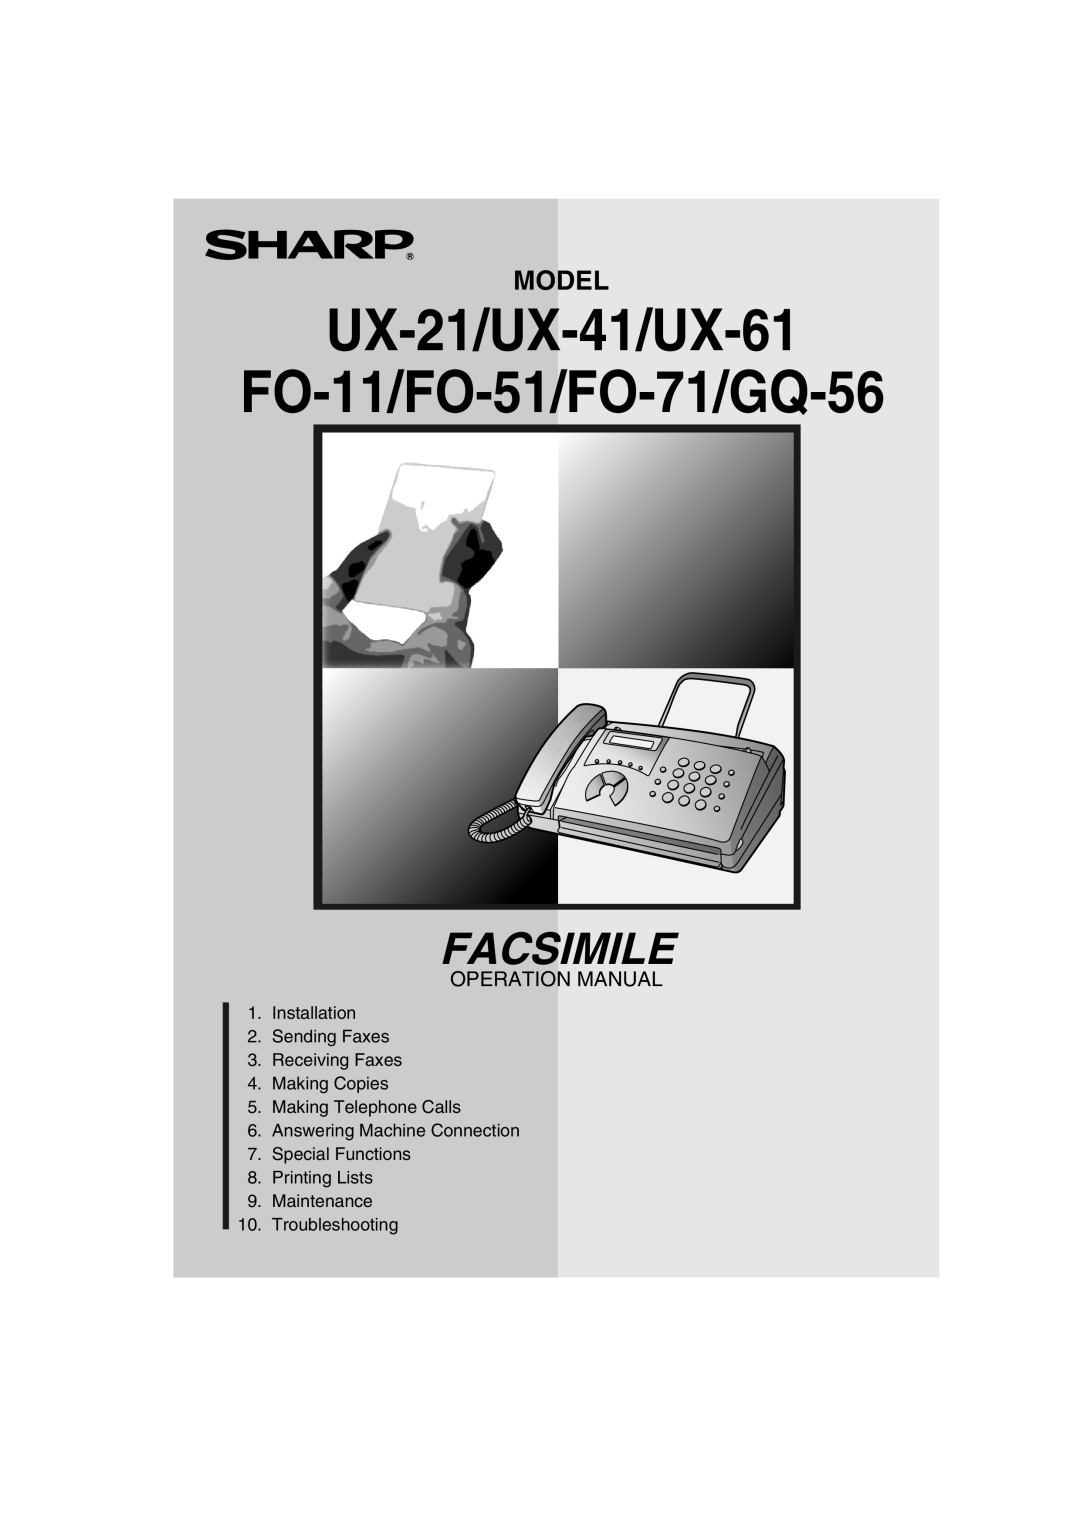 Sharp operation manual UX-21/UX-41/UX-61, FO-11/FO-51/FO-71/GQ-56, Facsimile, Model, Operation Manual 